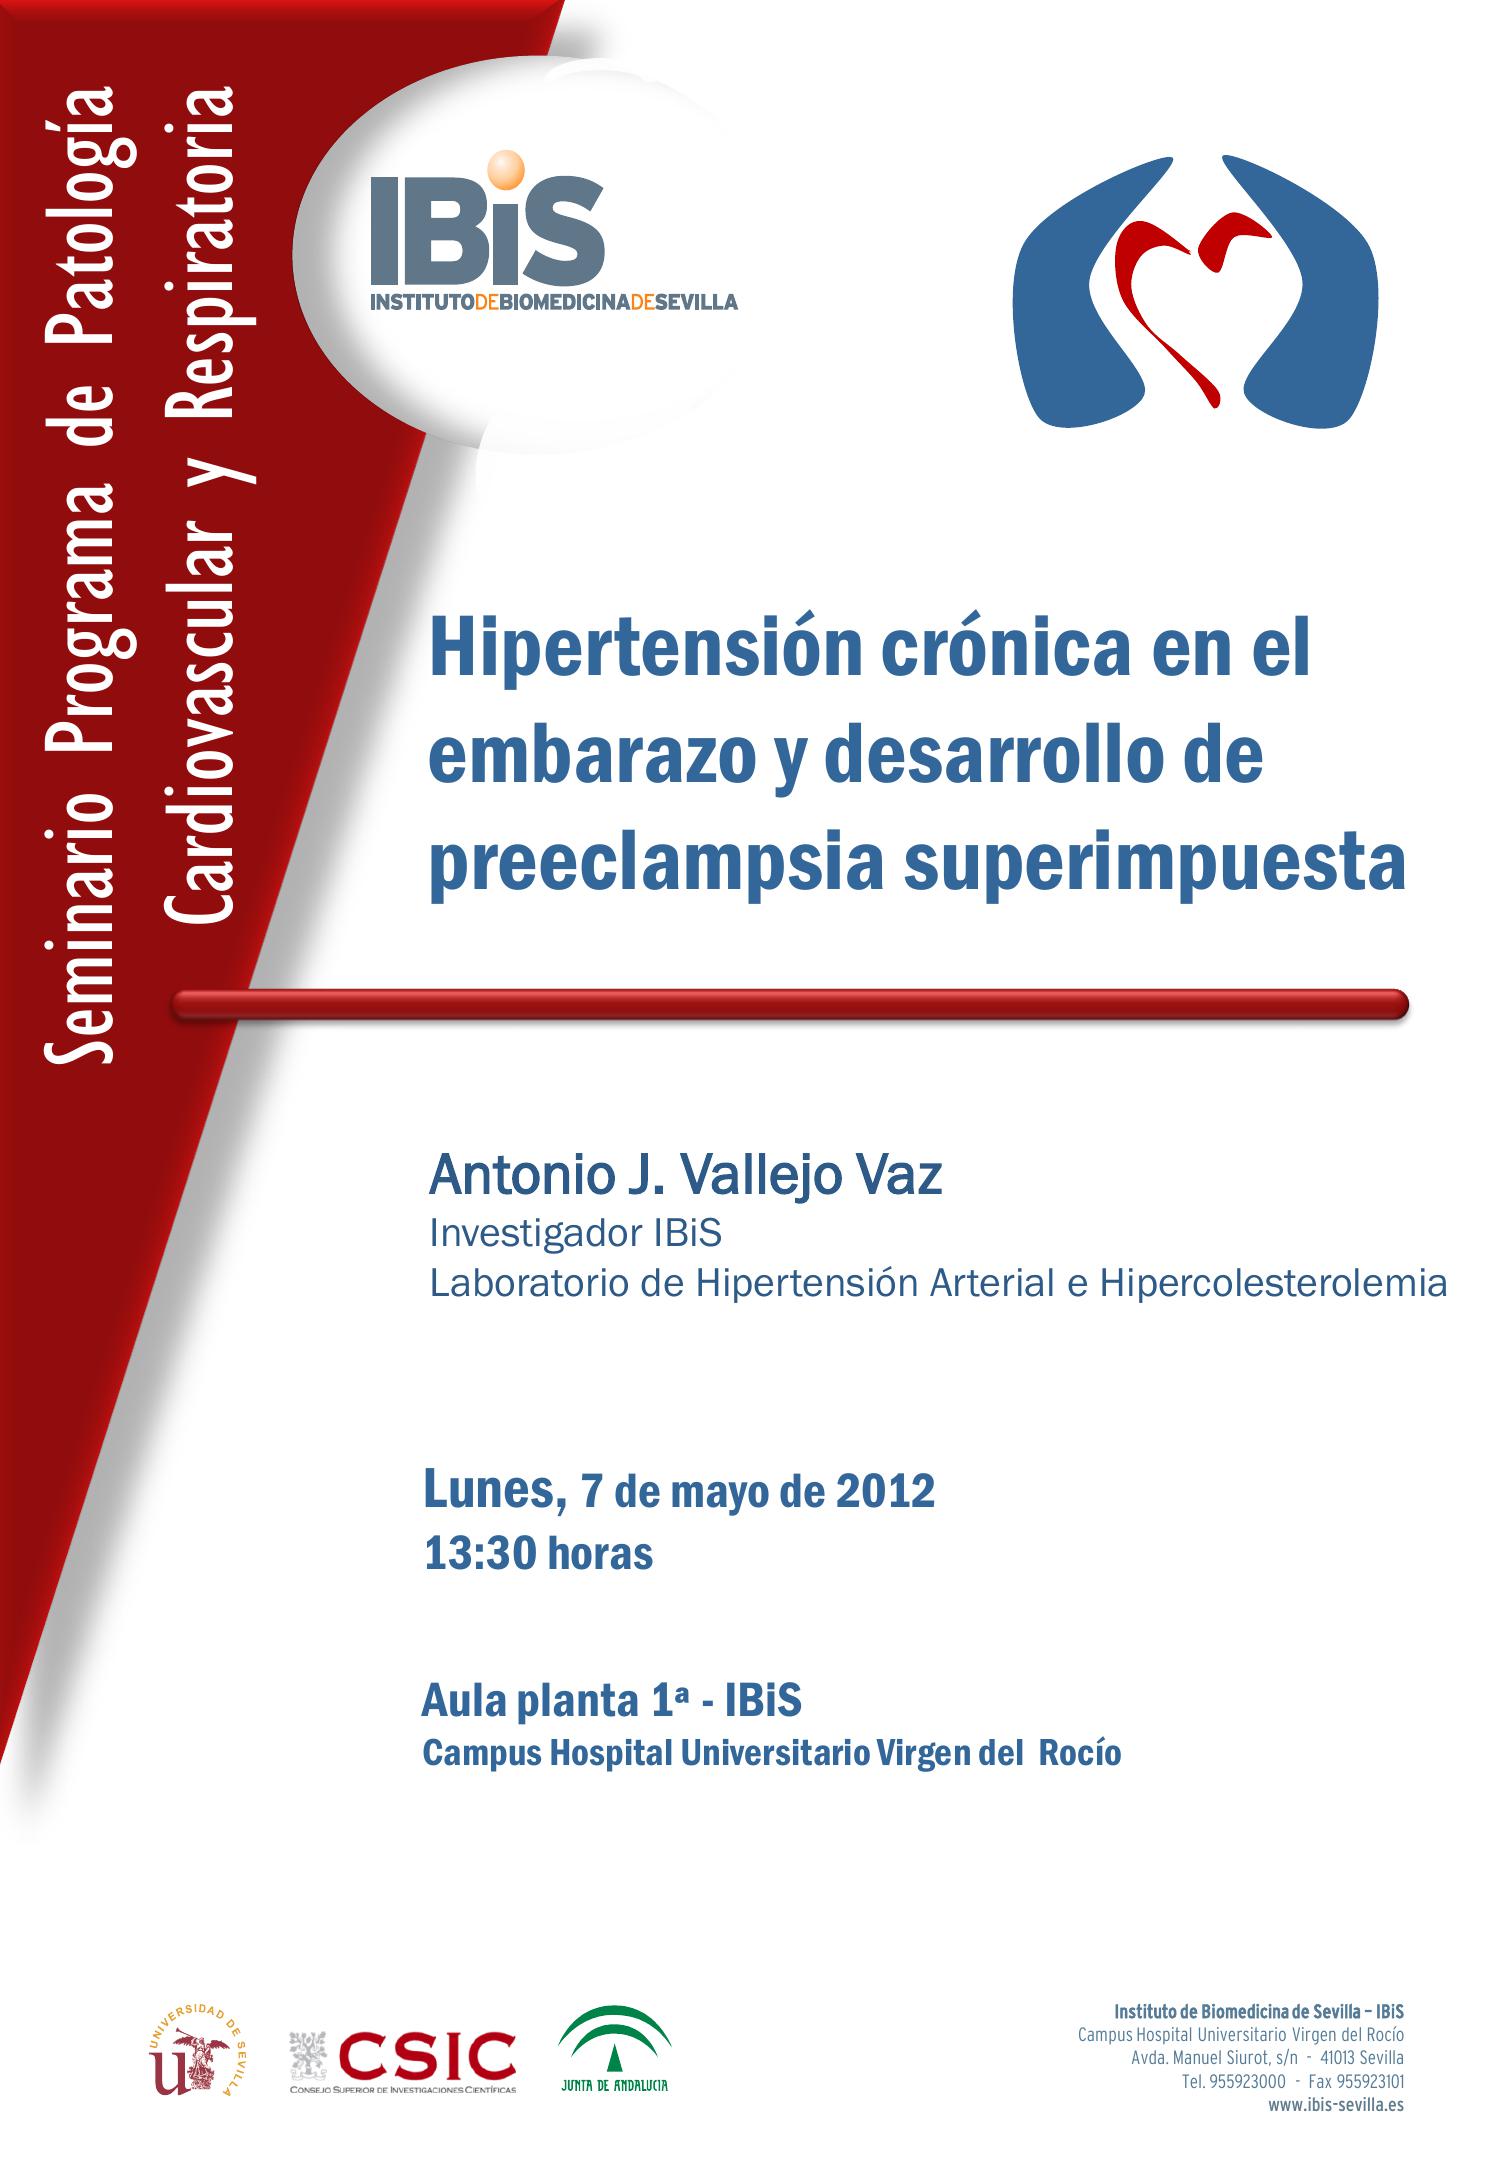 Poster: Hipertensión crónica en el embarazo y desarrollo de preeclampsia superimpuesta.